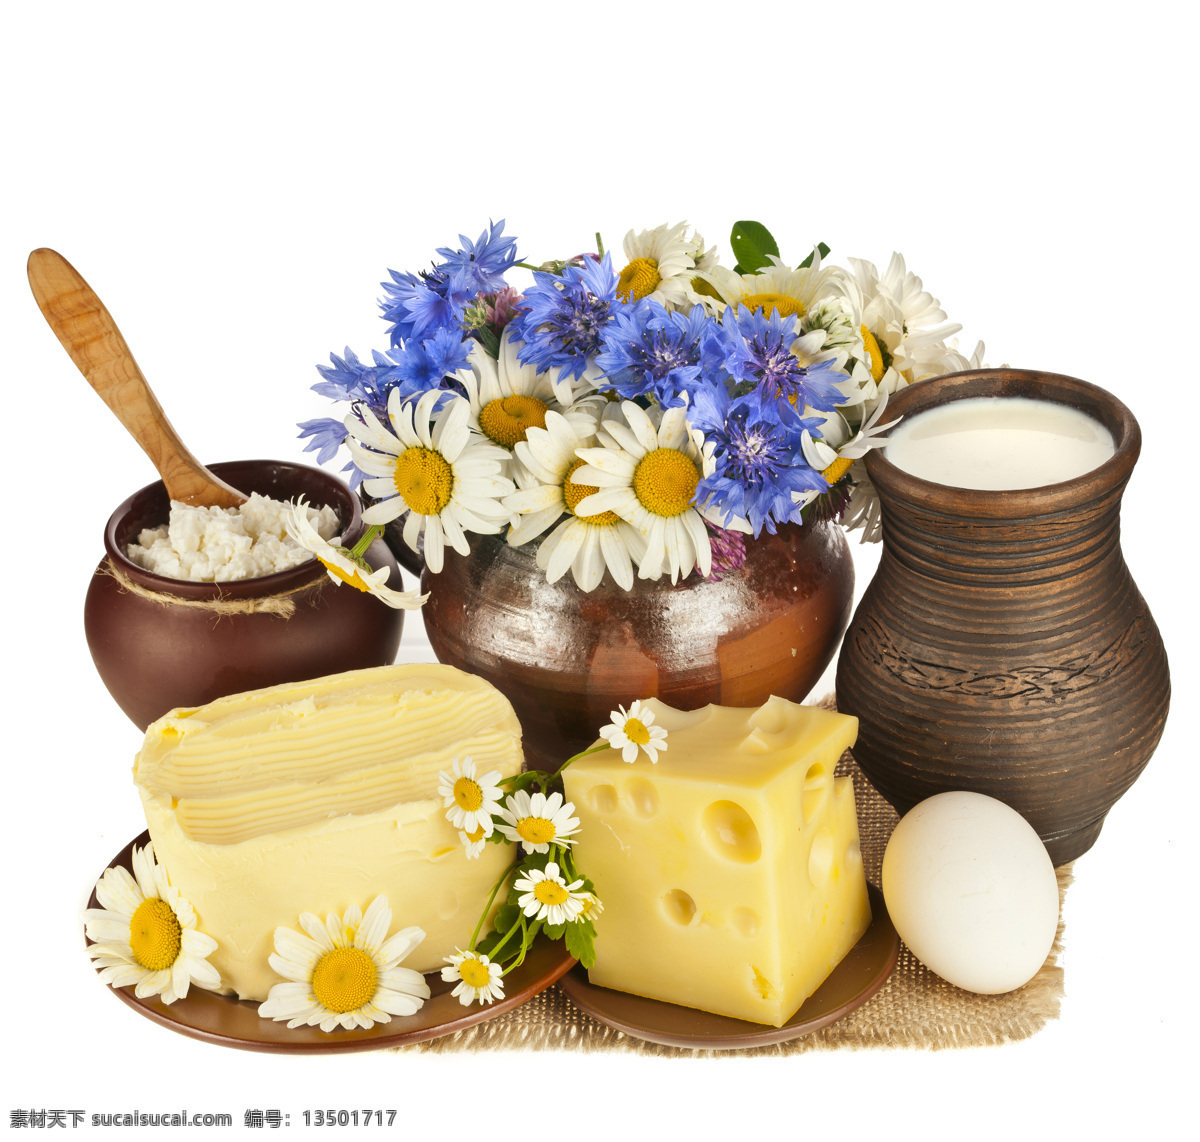 奶制品 花朵 素材图片 鲜花 鸡蛋 牛奶 牛奶摄影 面包 奶酪 美食 食物 饮料 外国美食 餐饮美食